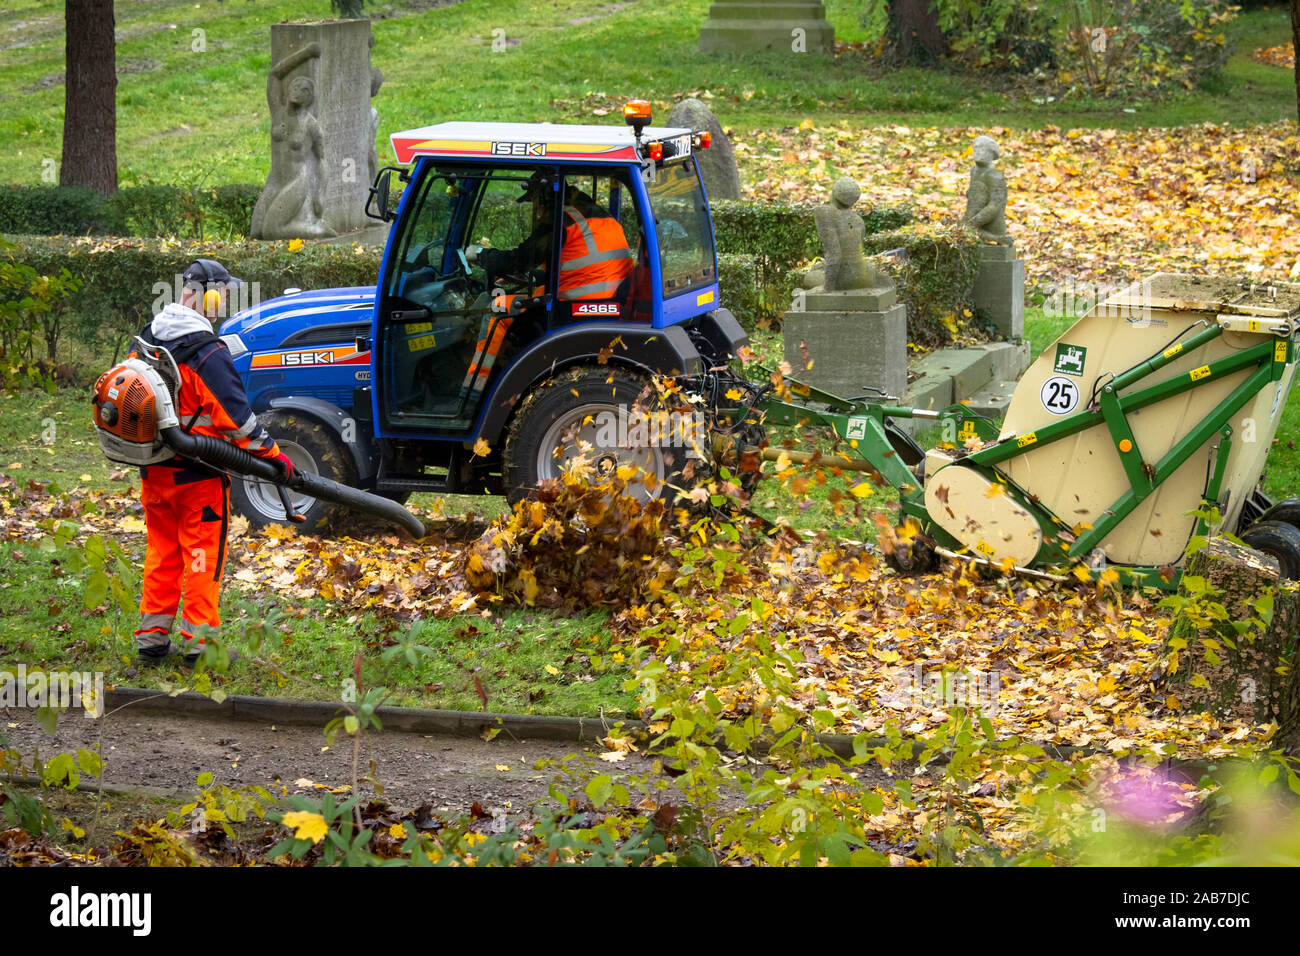 Arbeitnehmer mit einem Rucksack Laubbläser und mechanische Herauf von Blättern in einem öffentlichen Park in der Stadt Wetter, Nordrhein-Westfalen, Deutschland. Arbei Stockfoto